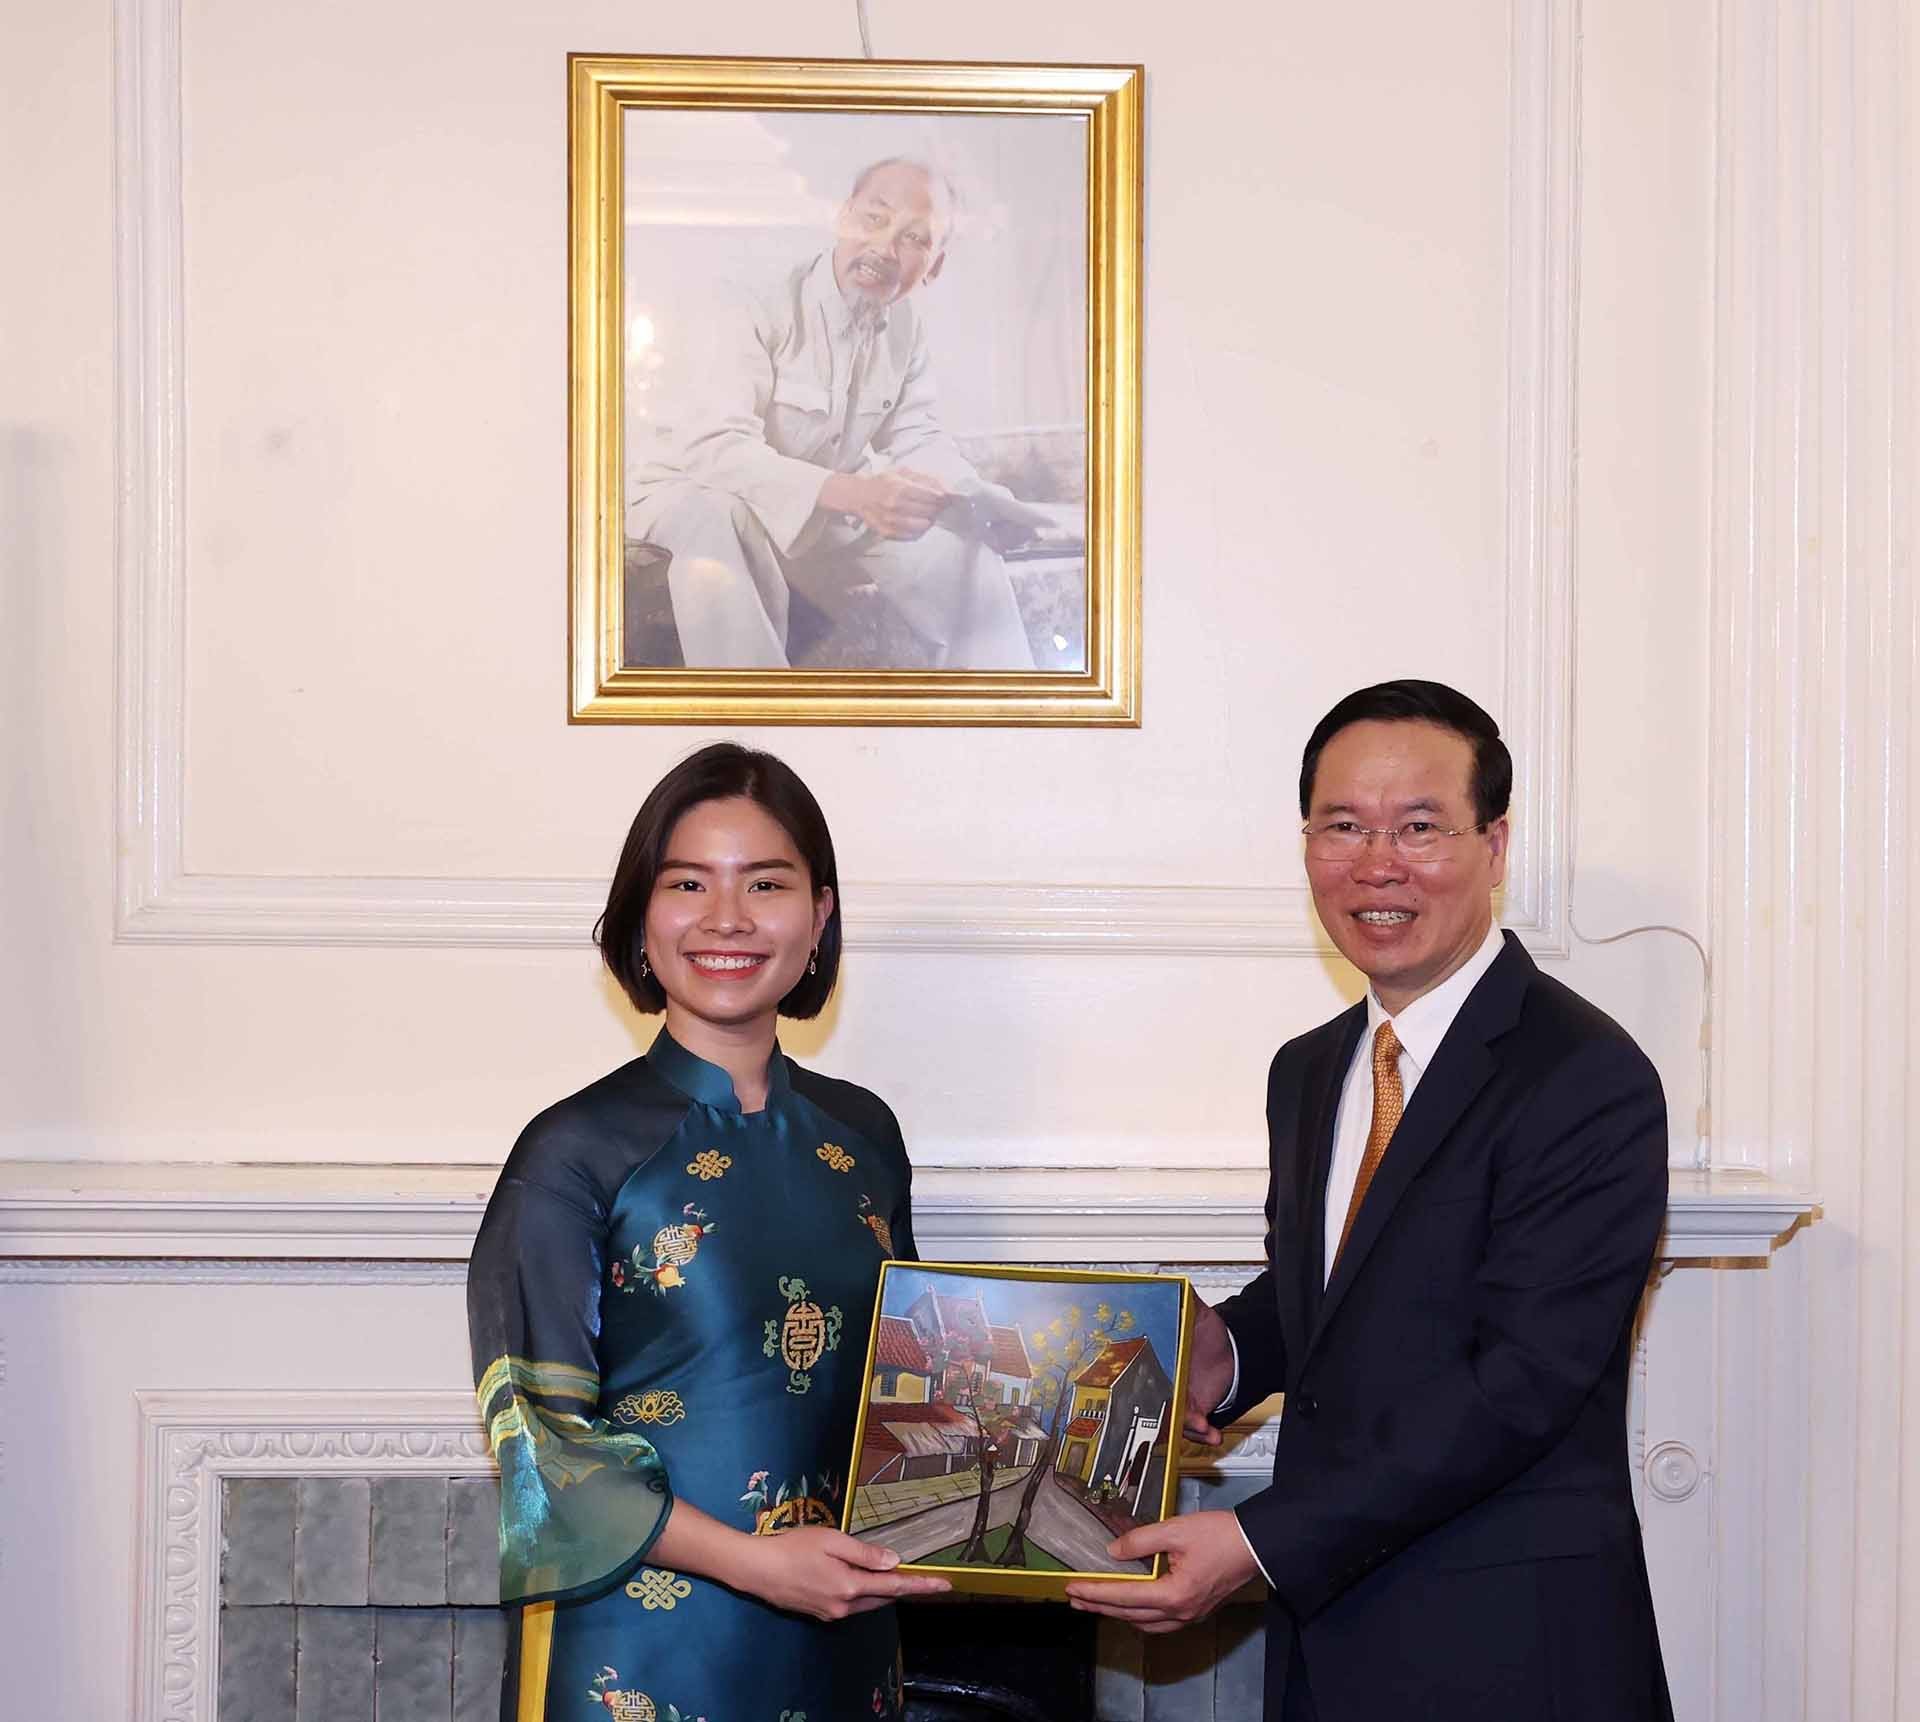 Chủ tịch nước thăm Đại sứ quán Việt Nam và gặp gỡ cộng đồng người Việt tại Anh